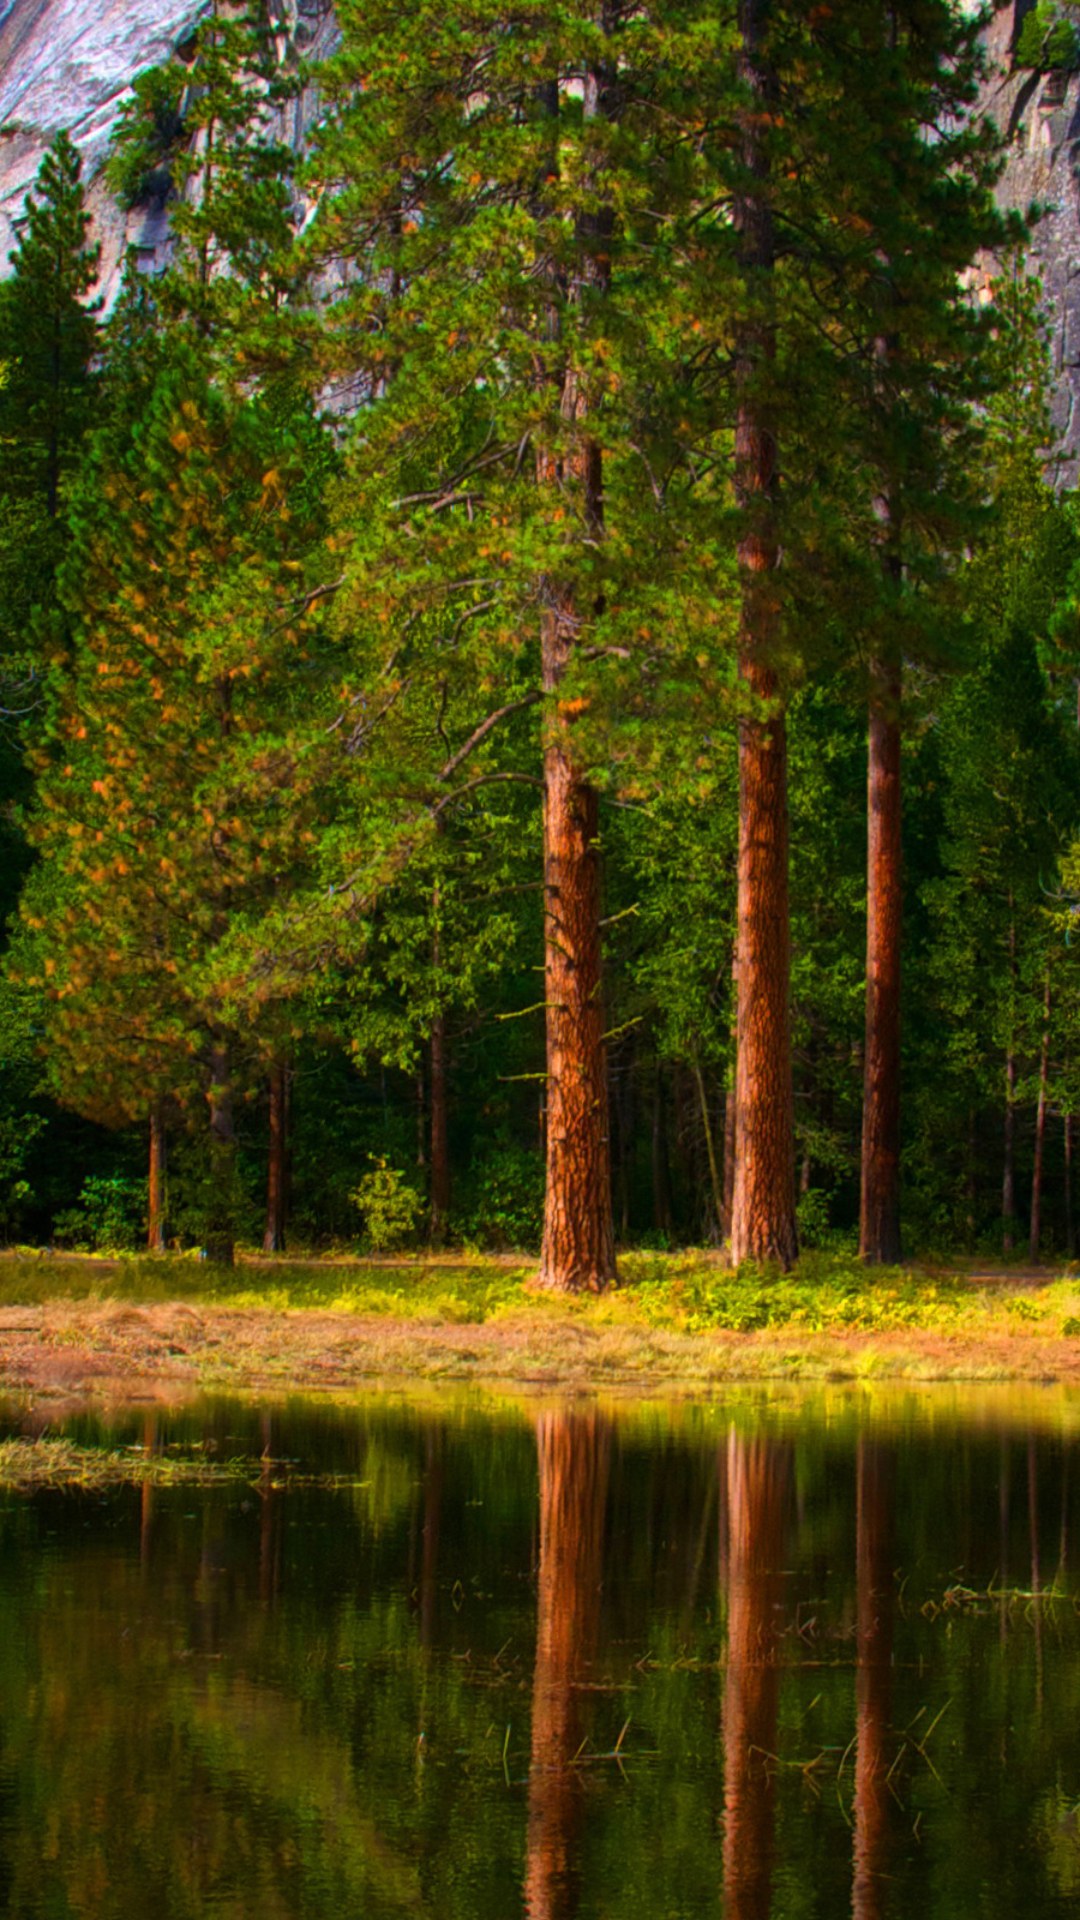 Заставка на телефон природы вертикальные. Лесной пейзаж. Озеро в лесу. Пейзаж вертикальный. Природа сосны.